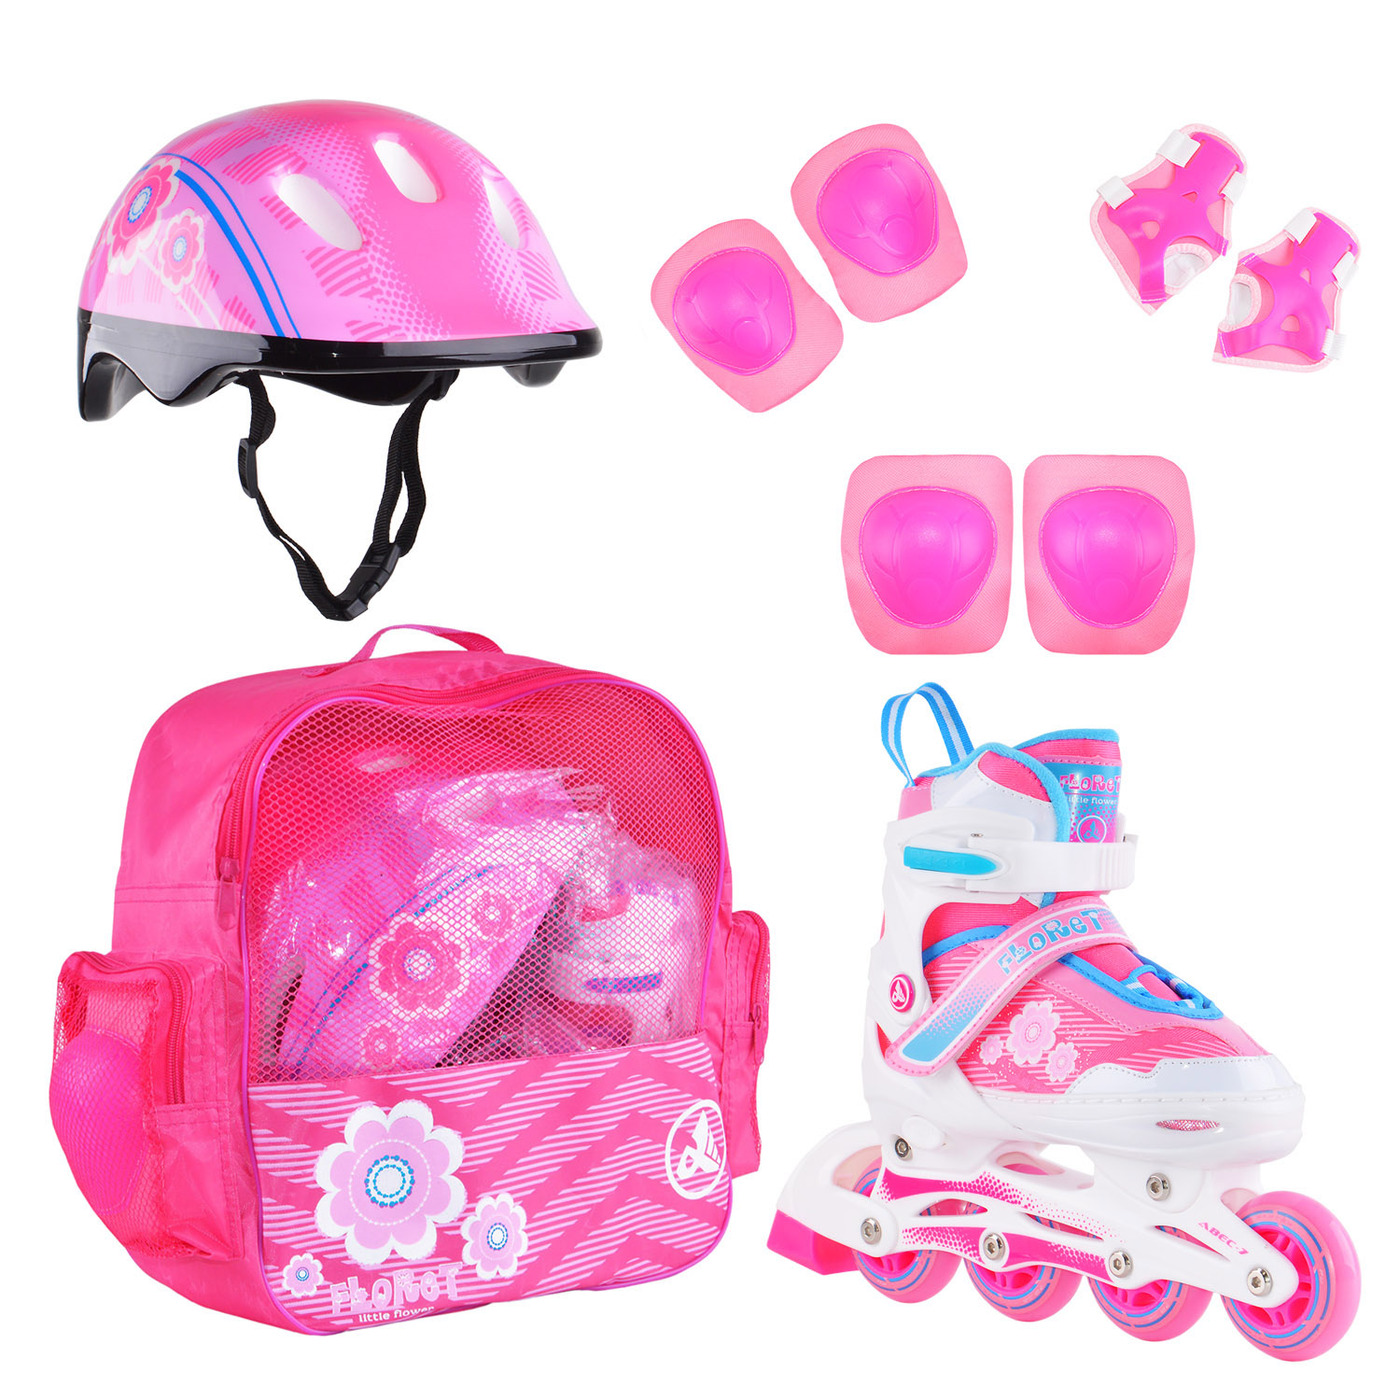 Раздвижные роликовые коньки Alpha Caprice FLORET Wh/Pink/Bl, шлем, защита, сумка S:31-34 раздвижные роликовые коньки alpha caprice x team pink m